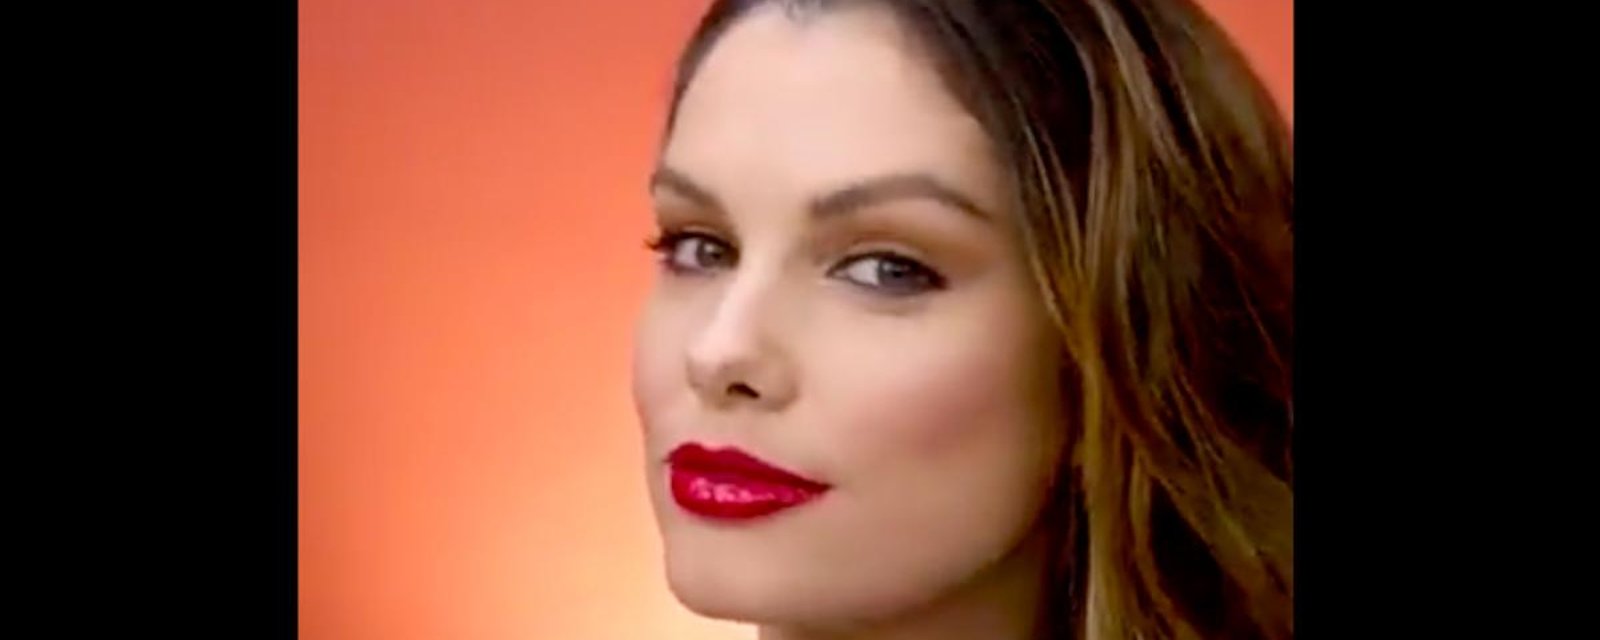 4 astuces maquillage pour optimiser vos rouges à lèvres 